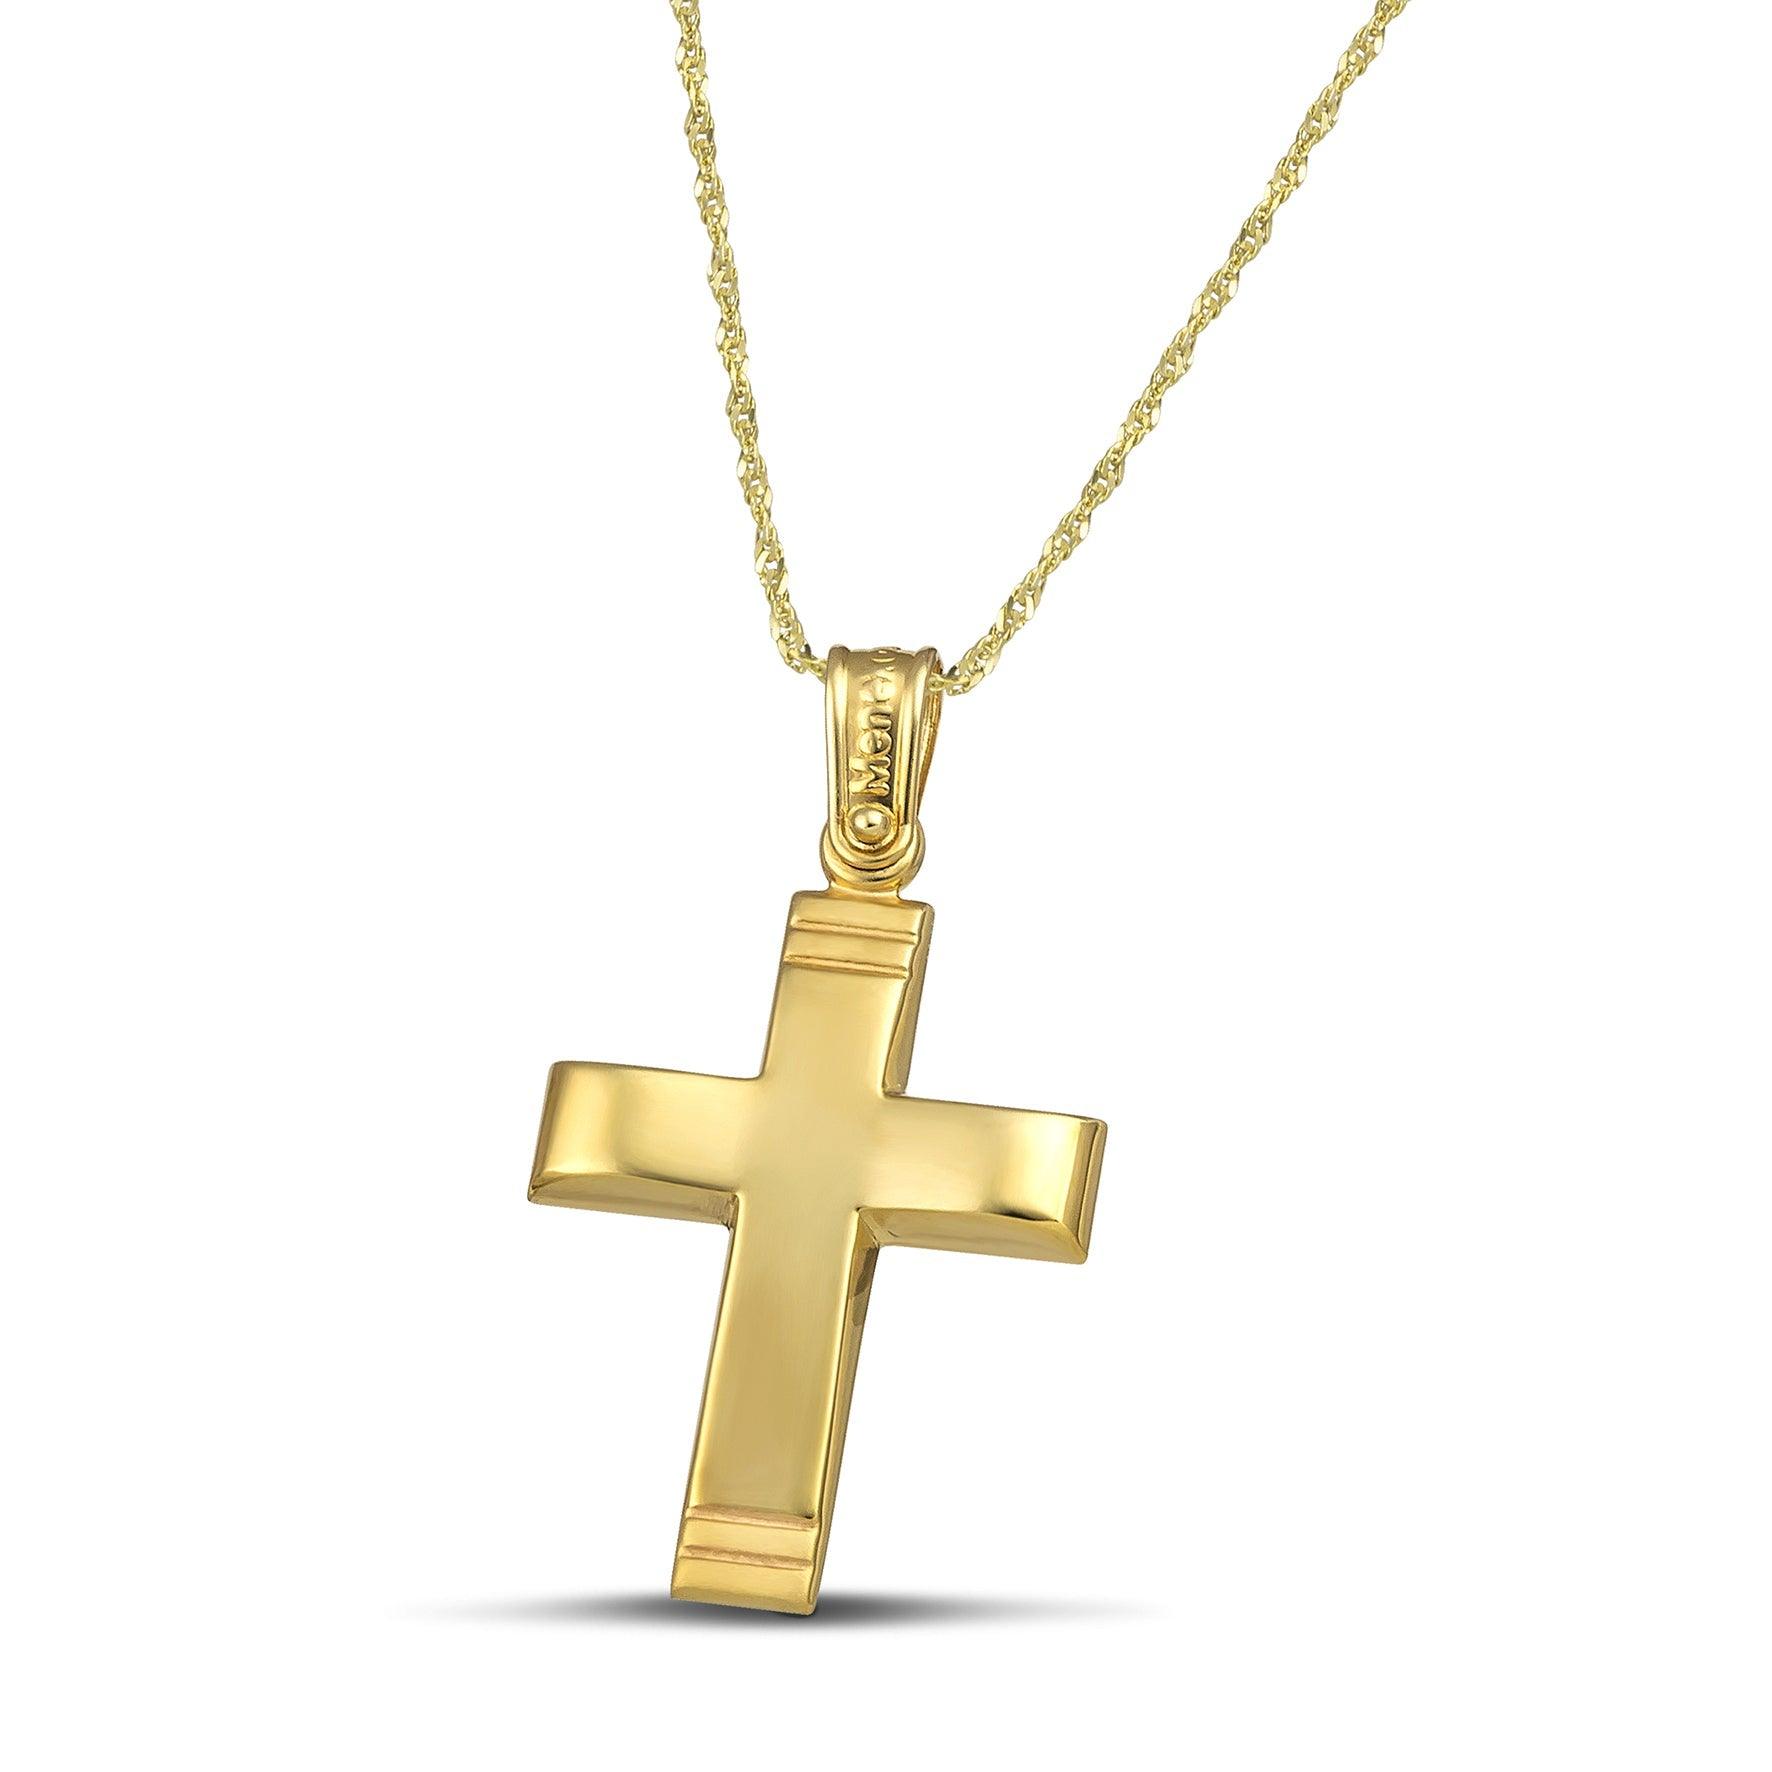 Χρυσός σταυρός Κ14 μίνιμαλ, λουστράτος. Φορεμένος σε λεπτή, στριφτή αλυσίδα.